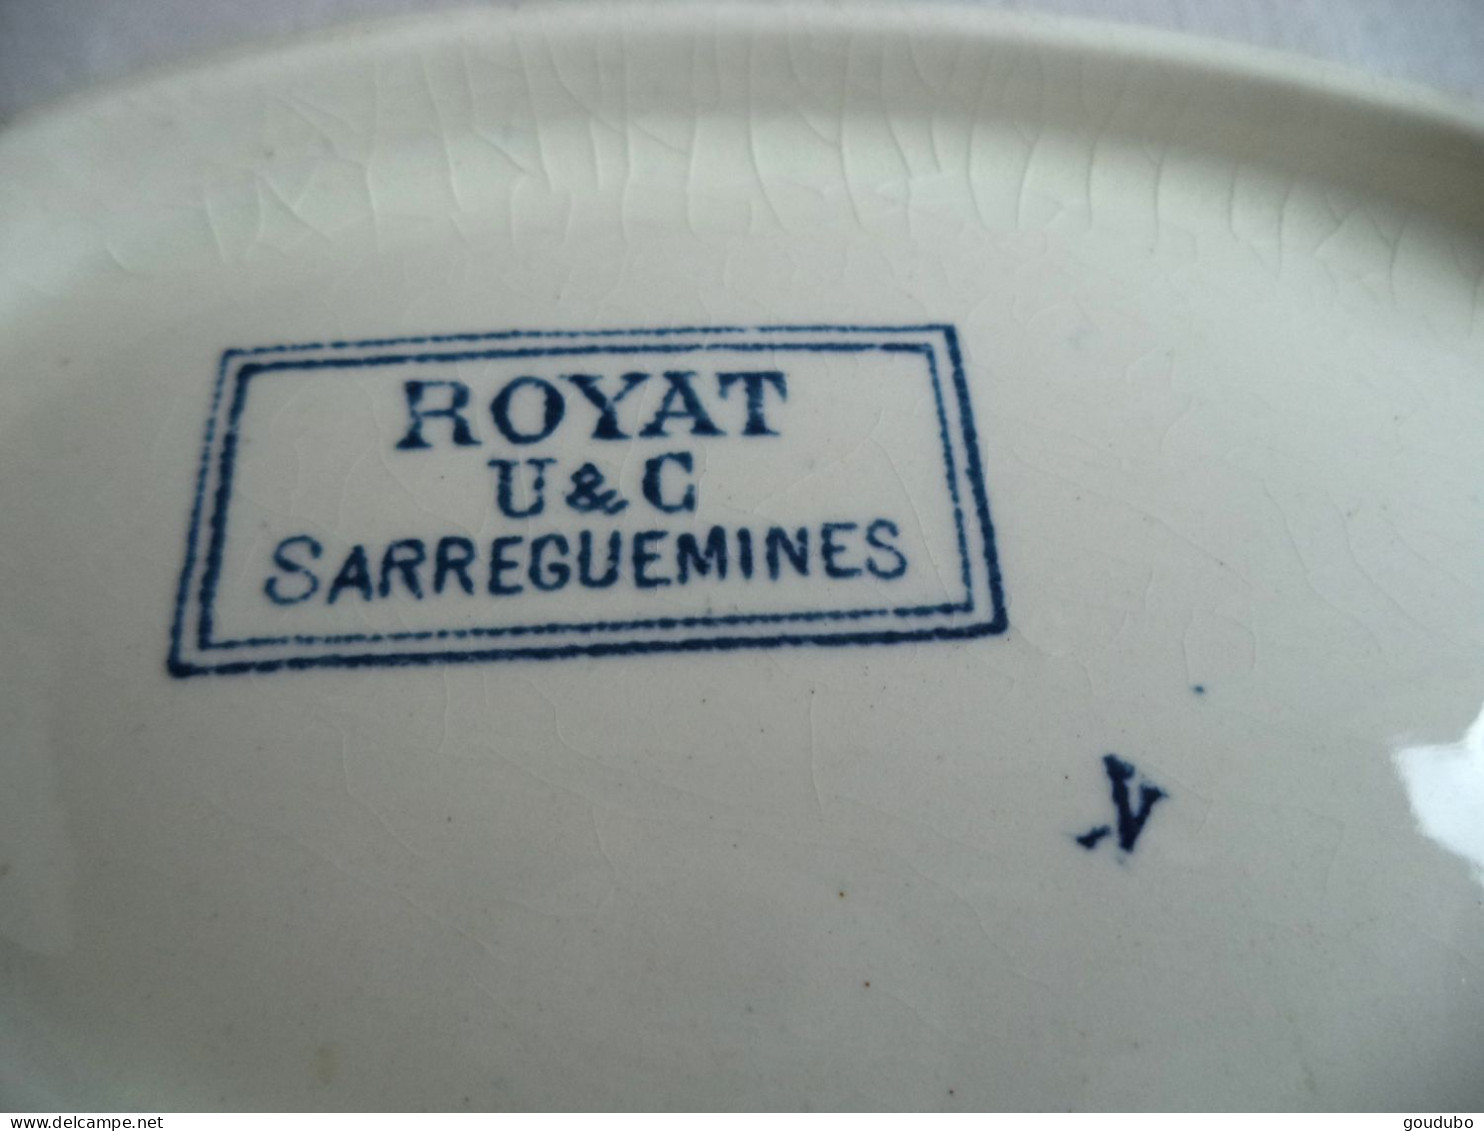 Sarreguemines U&C Service Royat Lot de trois pièces deux plats un ravier Décor fleurs bleues terre de fer